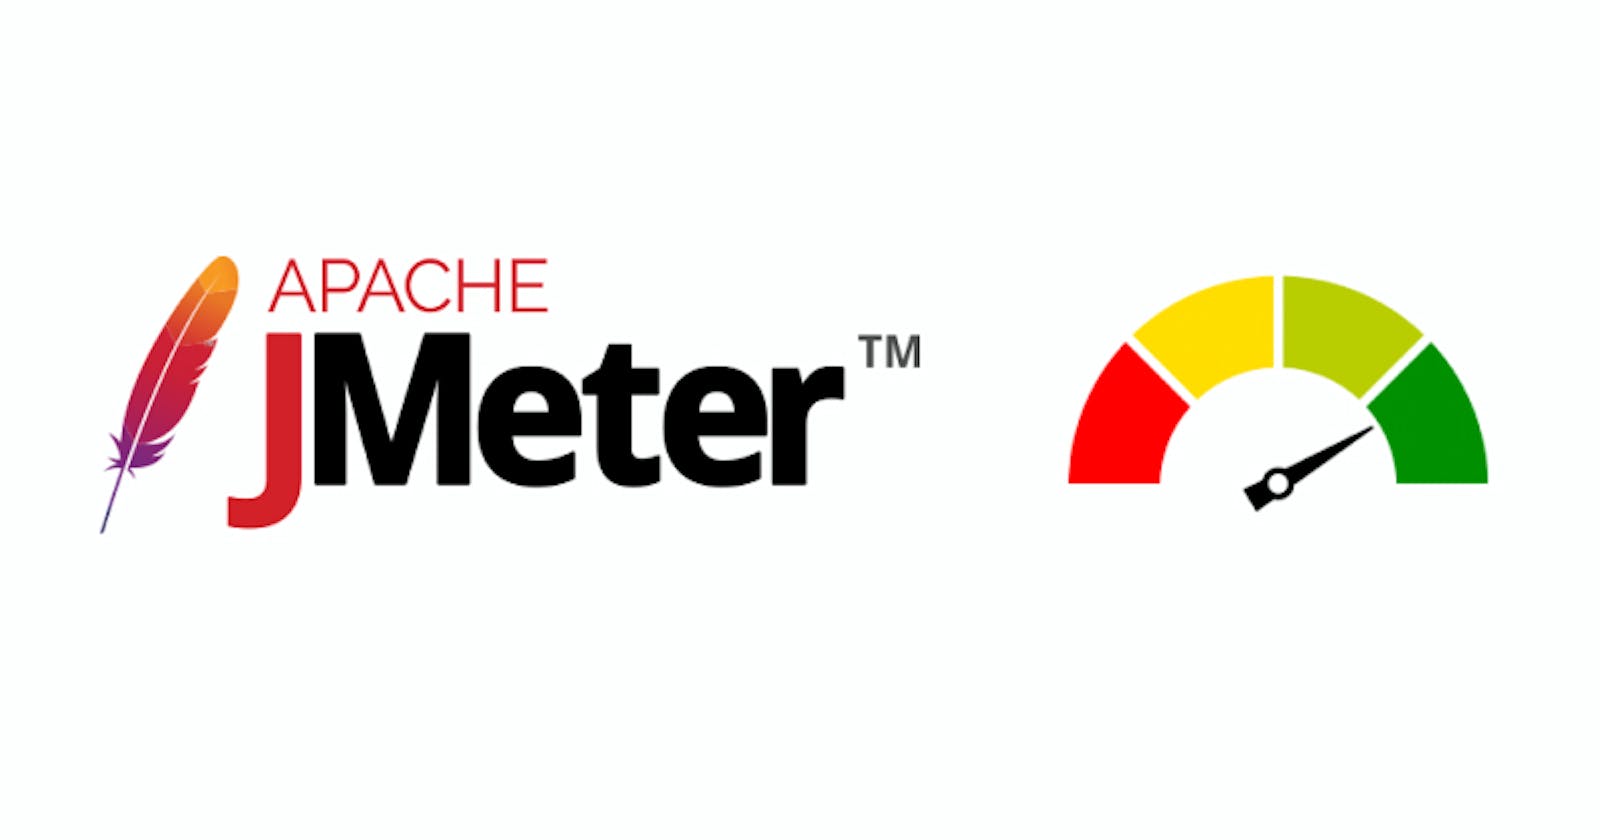 A Deep Dive into Apache JMeter's Versatile Capabilities